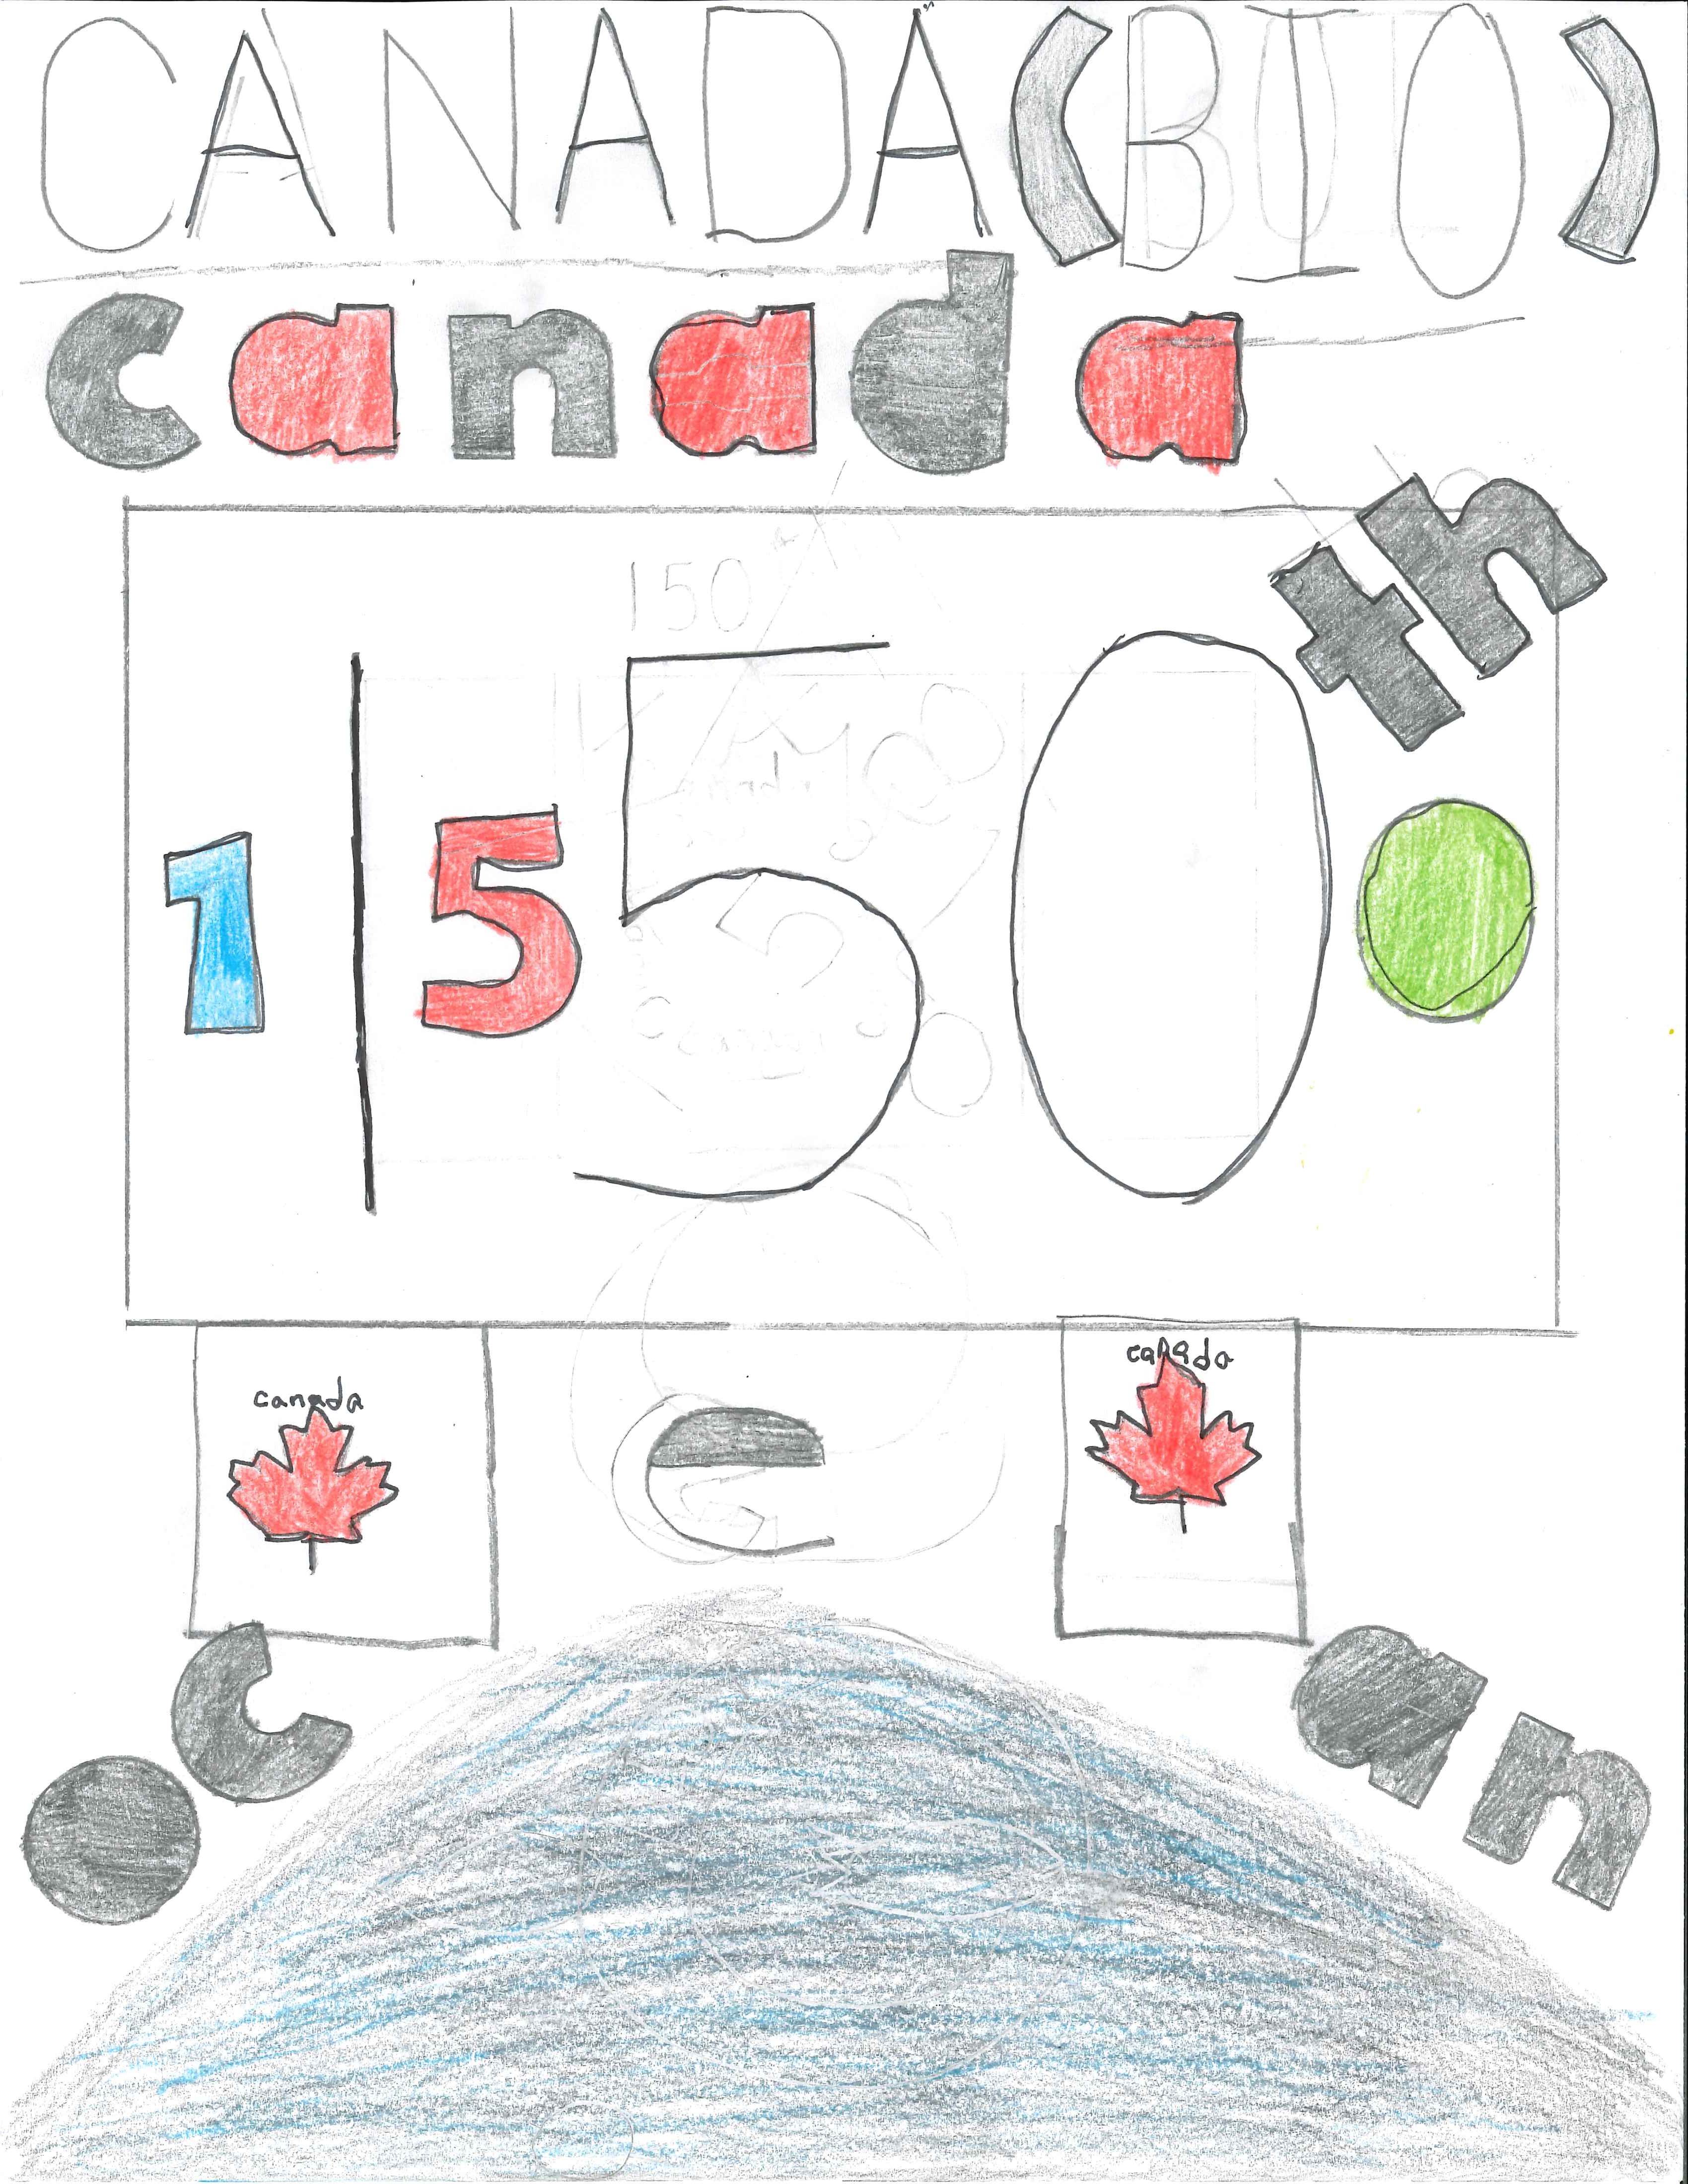 Connor A. Grade 6. "Canada 150 Ocean"